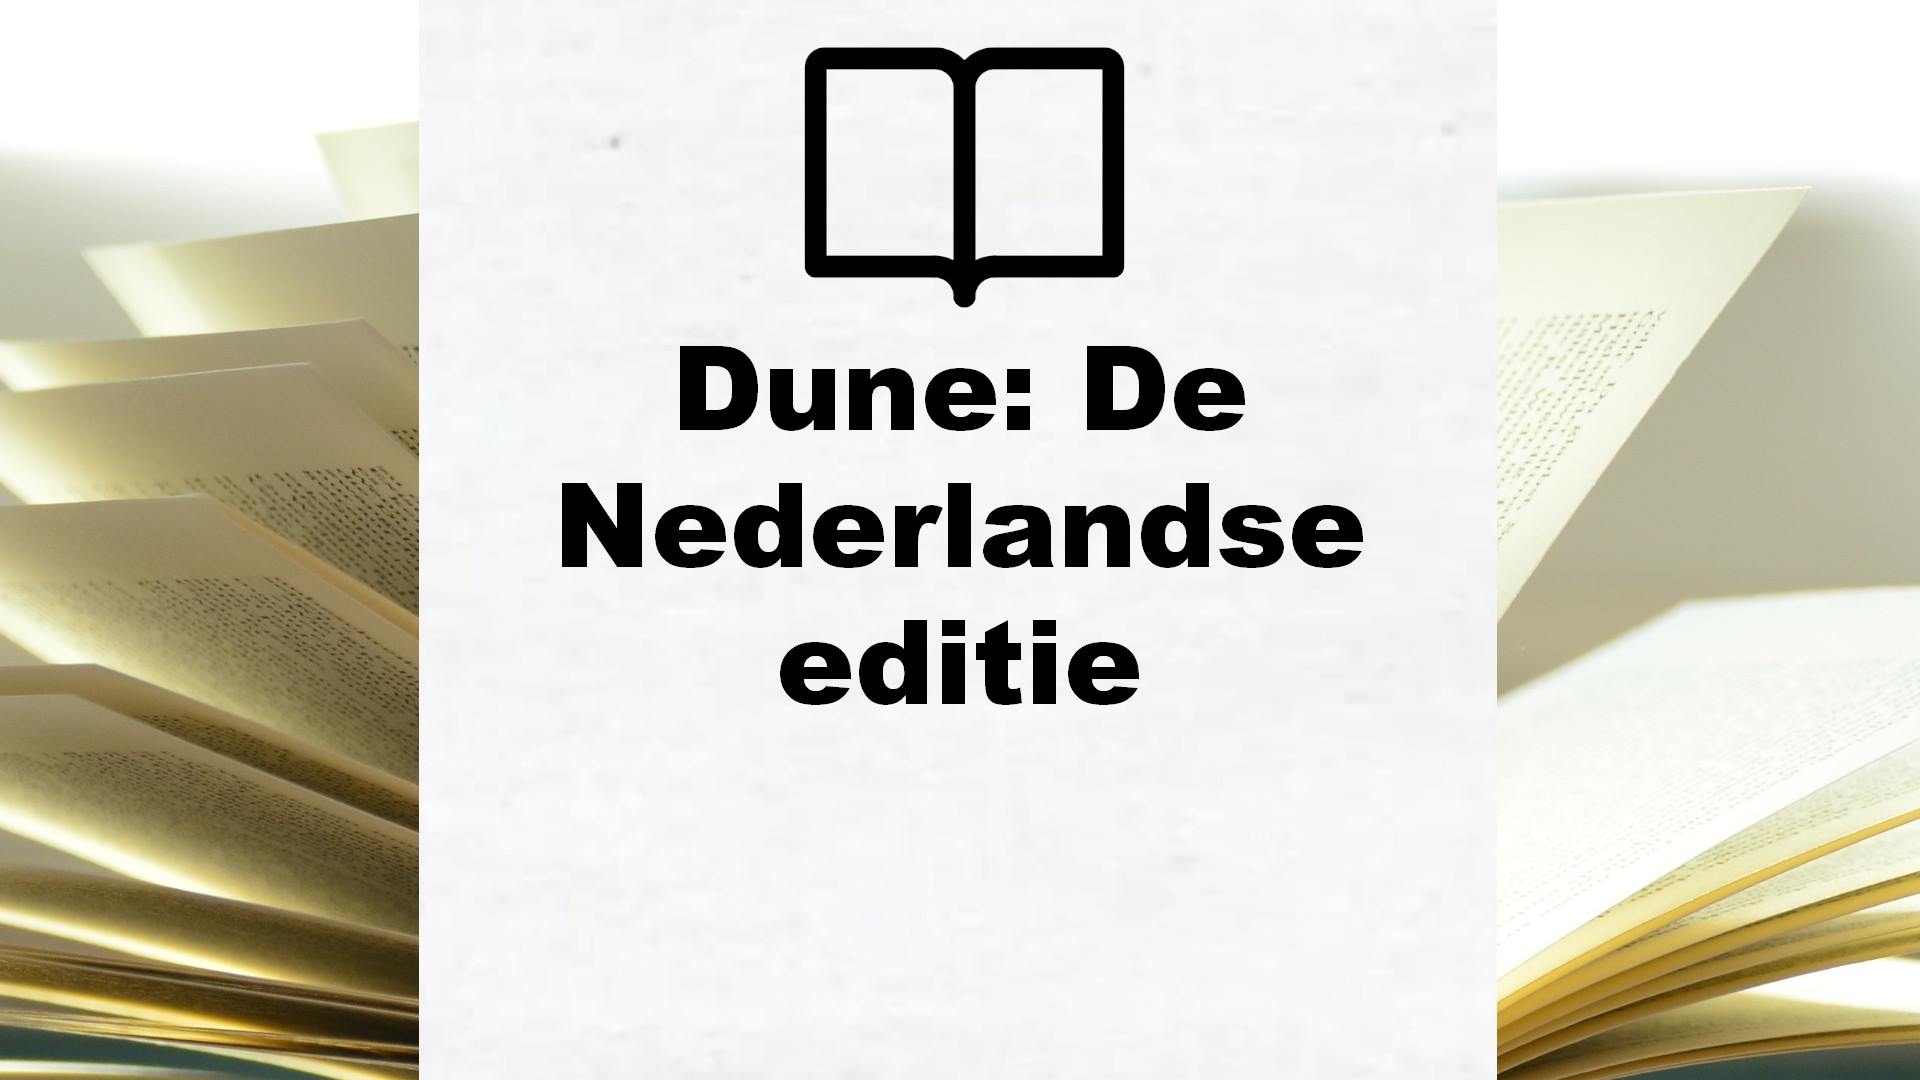 Dune: De Nederlandse editie – Boekrecensie